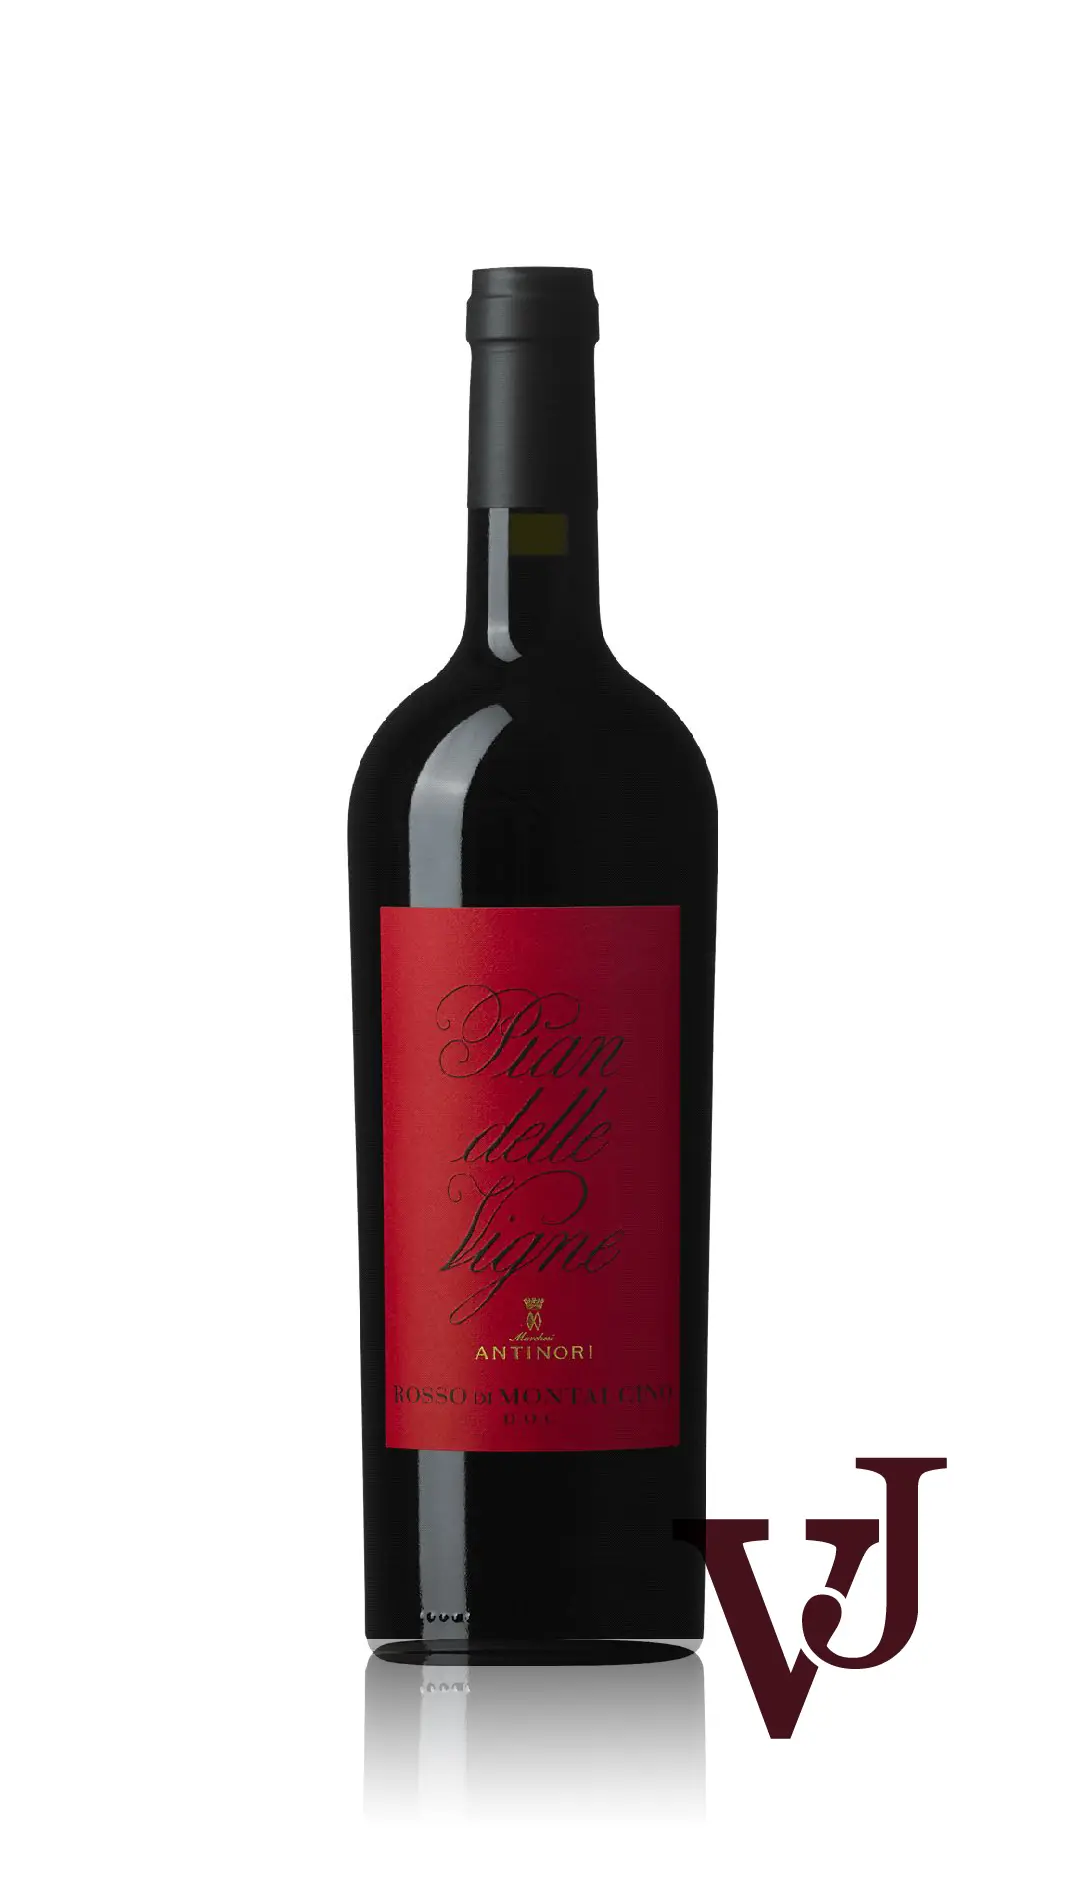 Rött Vin - Pian delle Vigne Rosso di Montalcino artikel nummer 8330501 från producenten Marchesi Antinori från området Italien - Vinjournalen.se